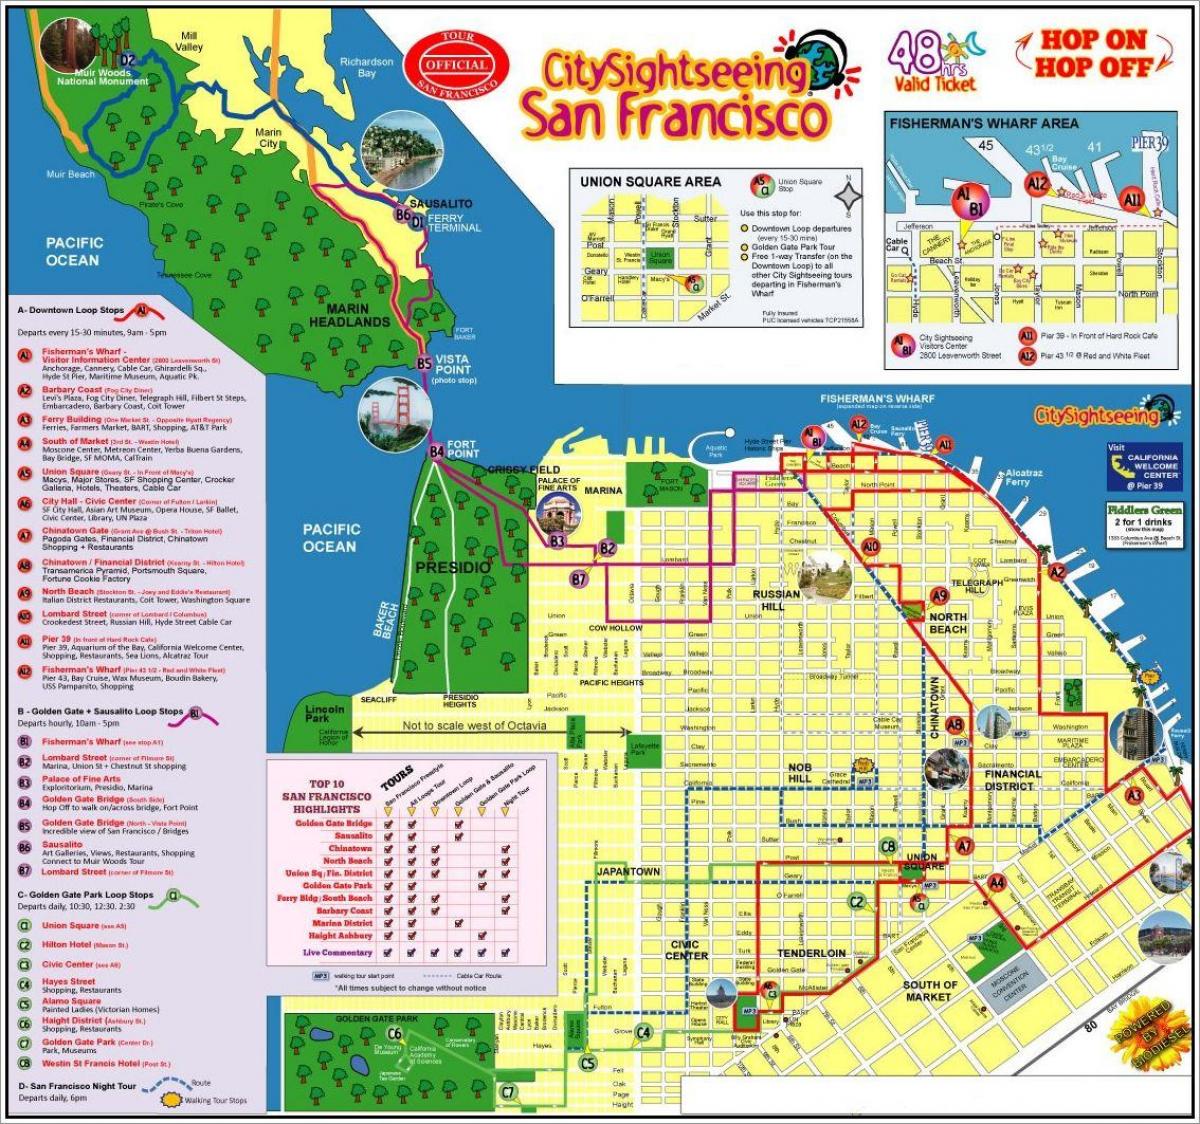 San Francisco hop on hop off bus tour mapě